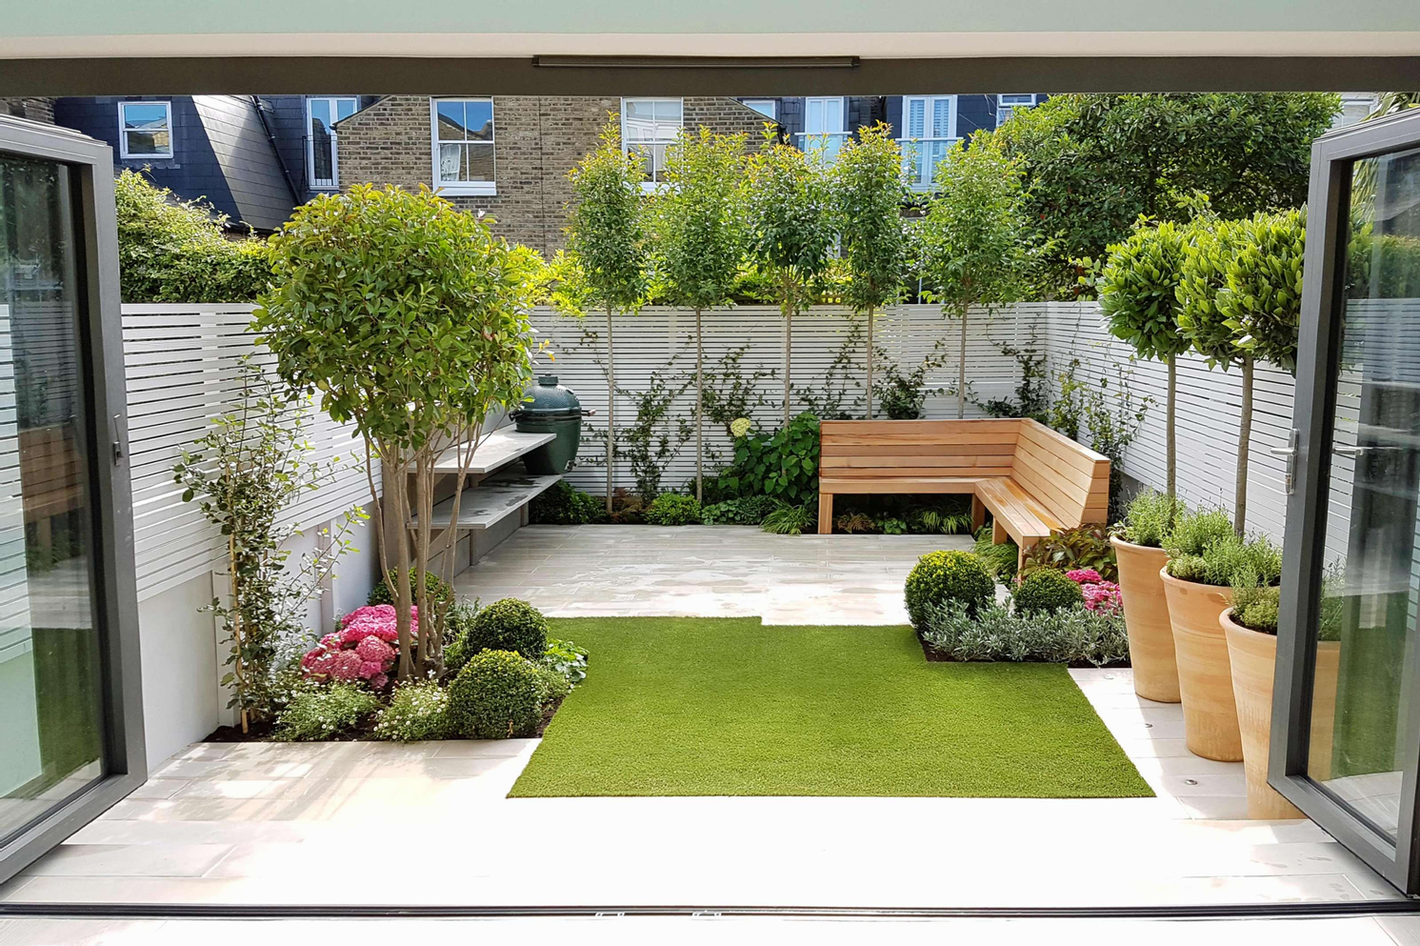 Creating a Serene Outdoor Oasis: Garden Design Patio Tips